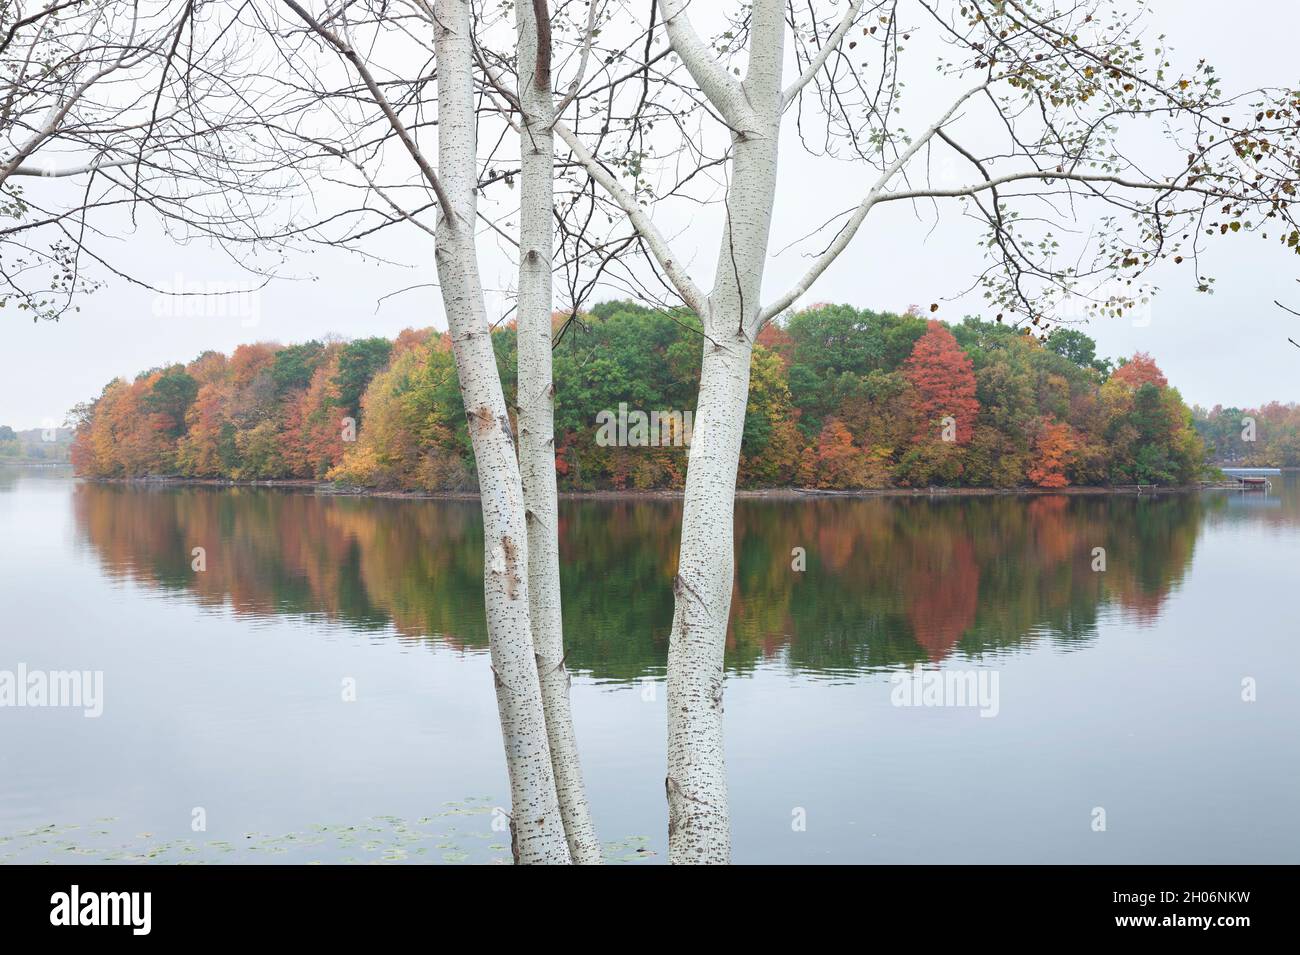 Ruhiger See mit Bäumen in Herbstfarbe und weißen Pappeln im Vordergrund Stockfoto